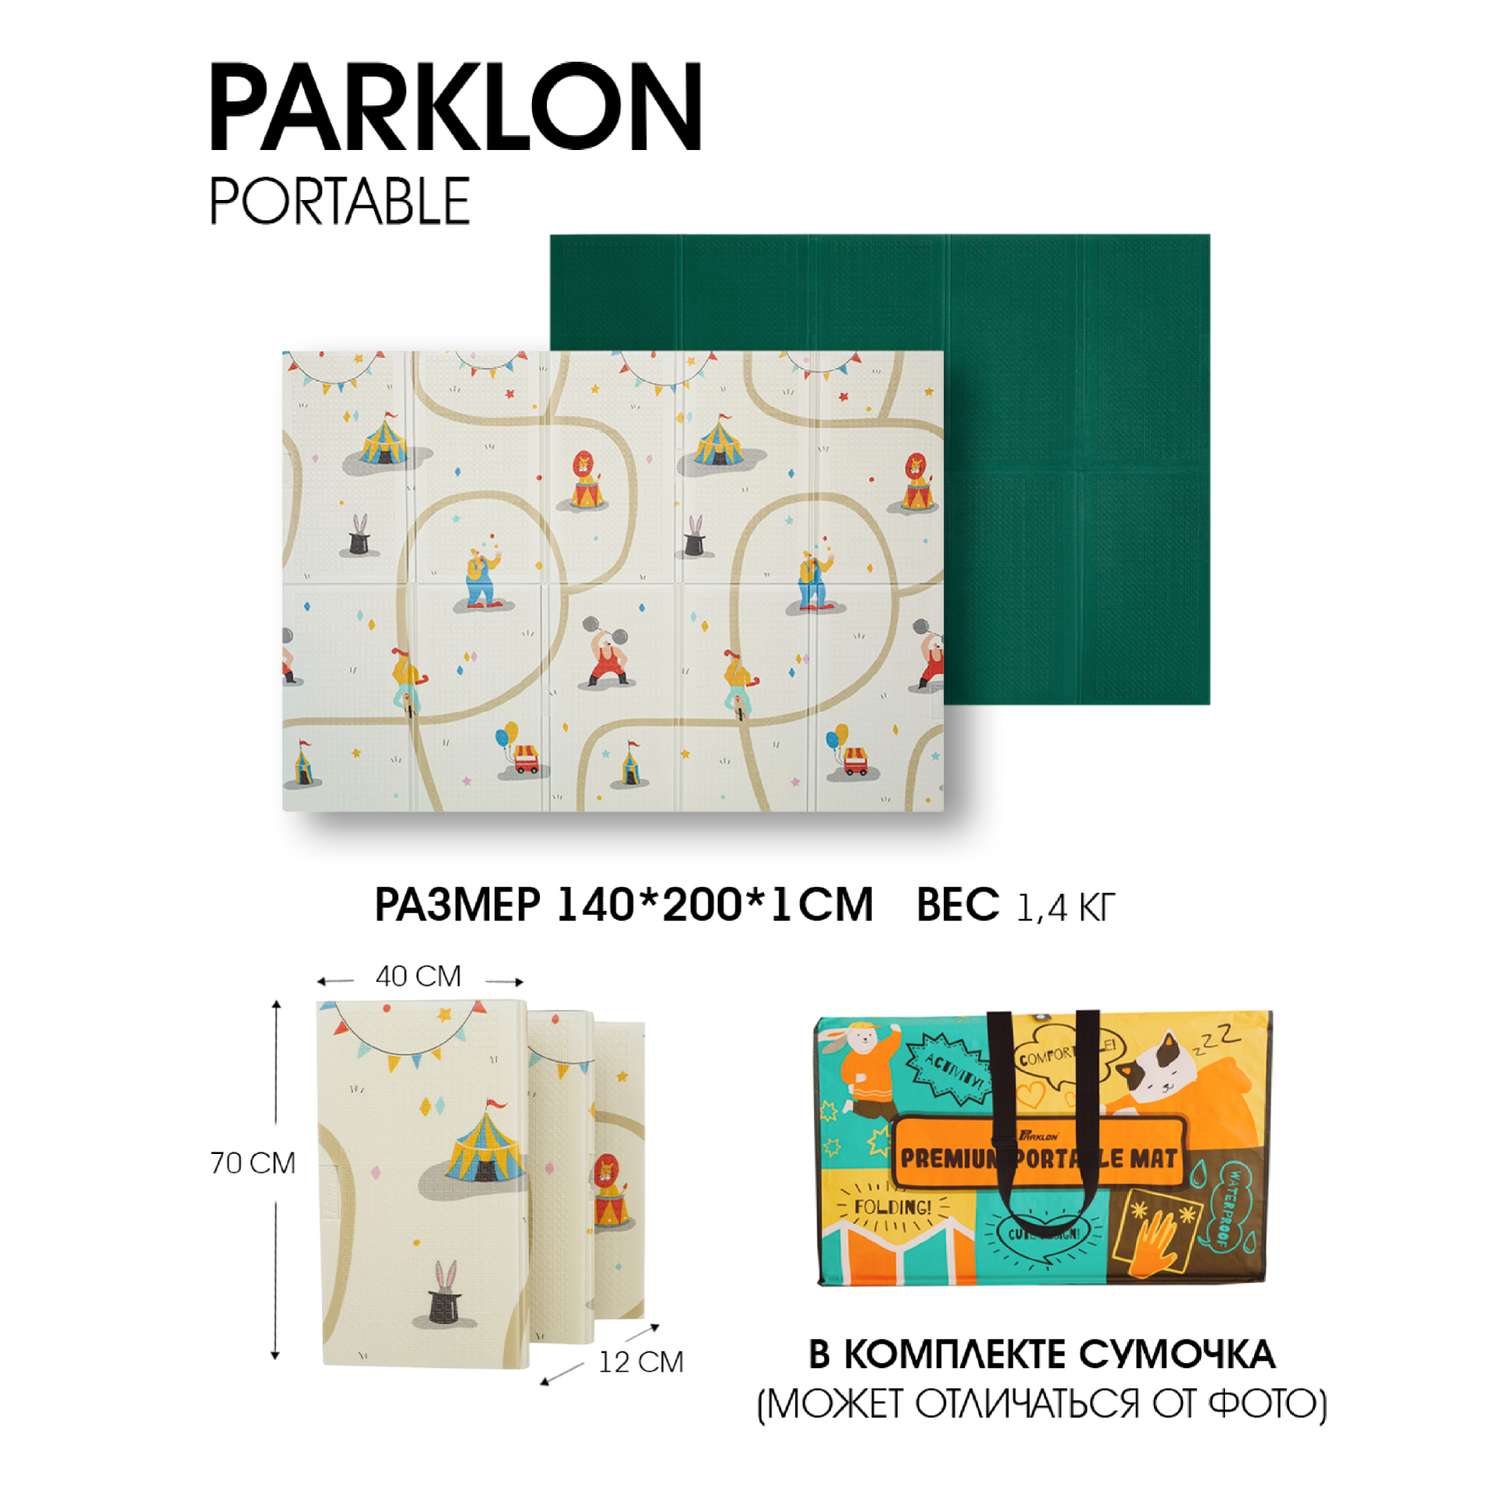 Игровой коврик складной PARKLON Portable Цирк - фото 13